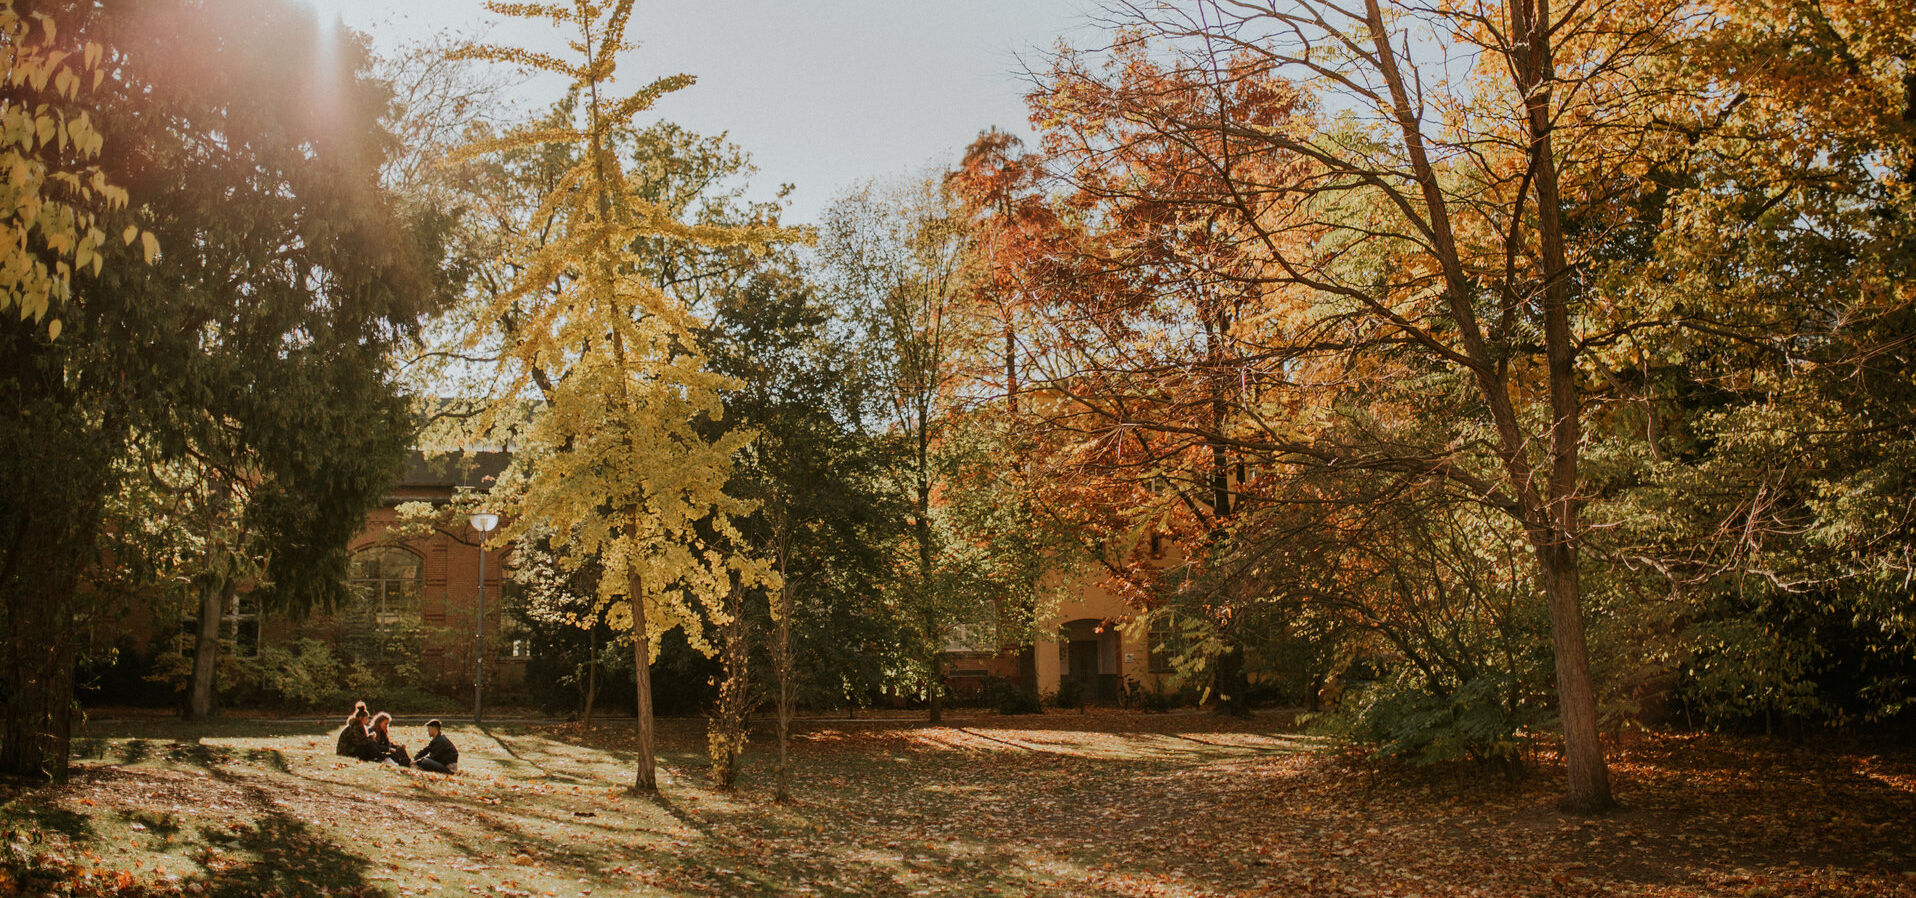 Sonnenschein im Herbst auf der Rückseite des Hauptgebäudes, die Blätter der Bäume sind gelb und rot gefärbt 